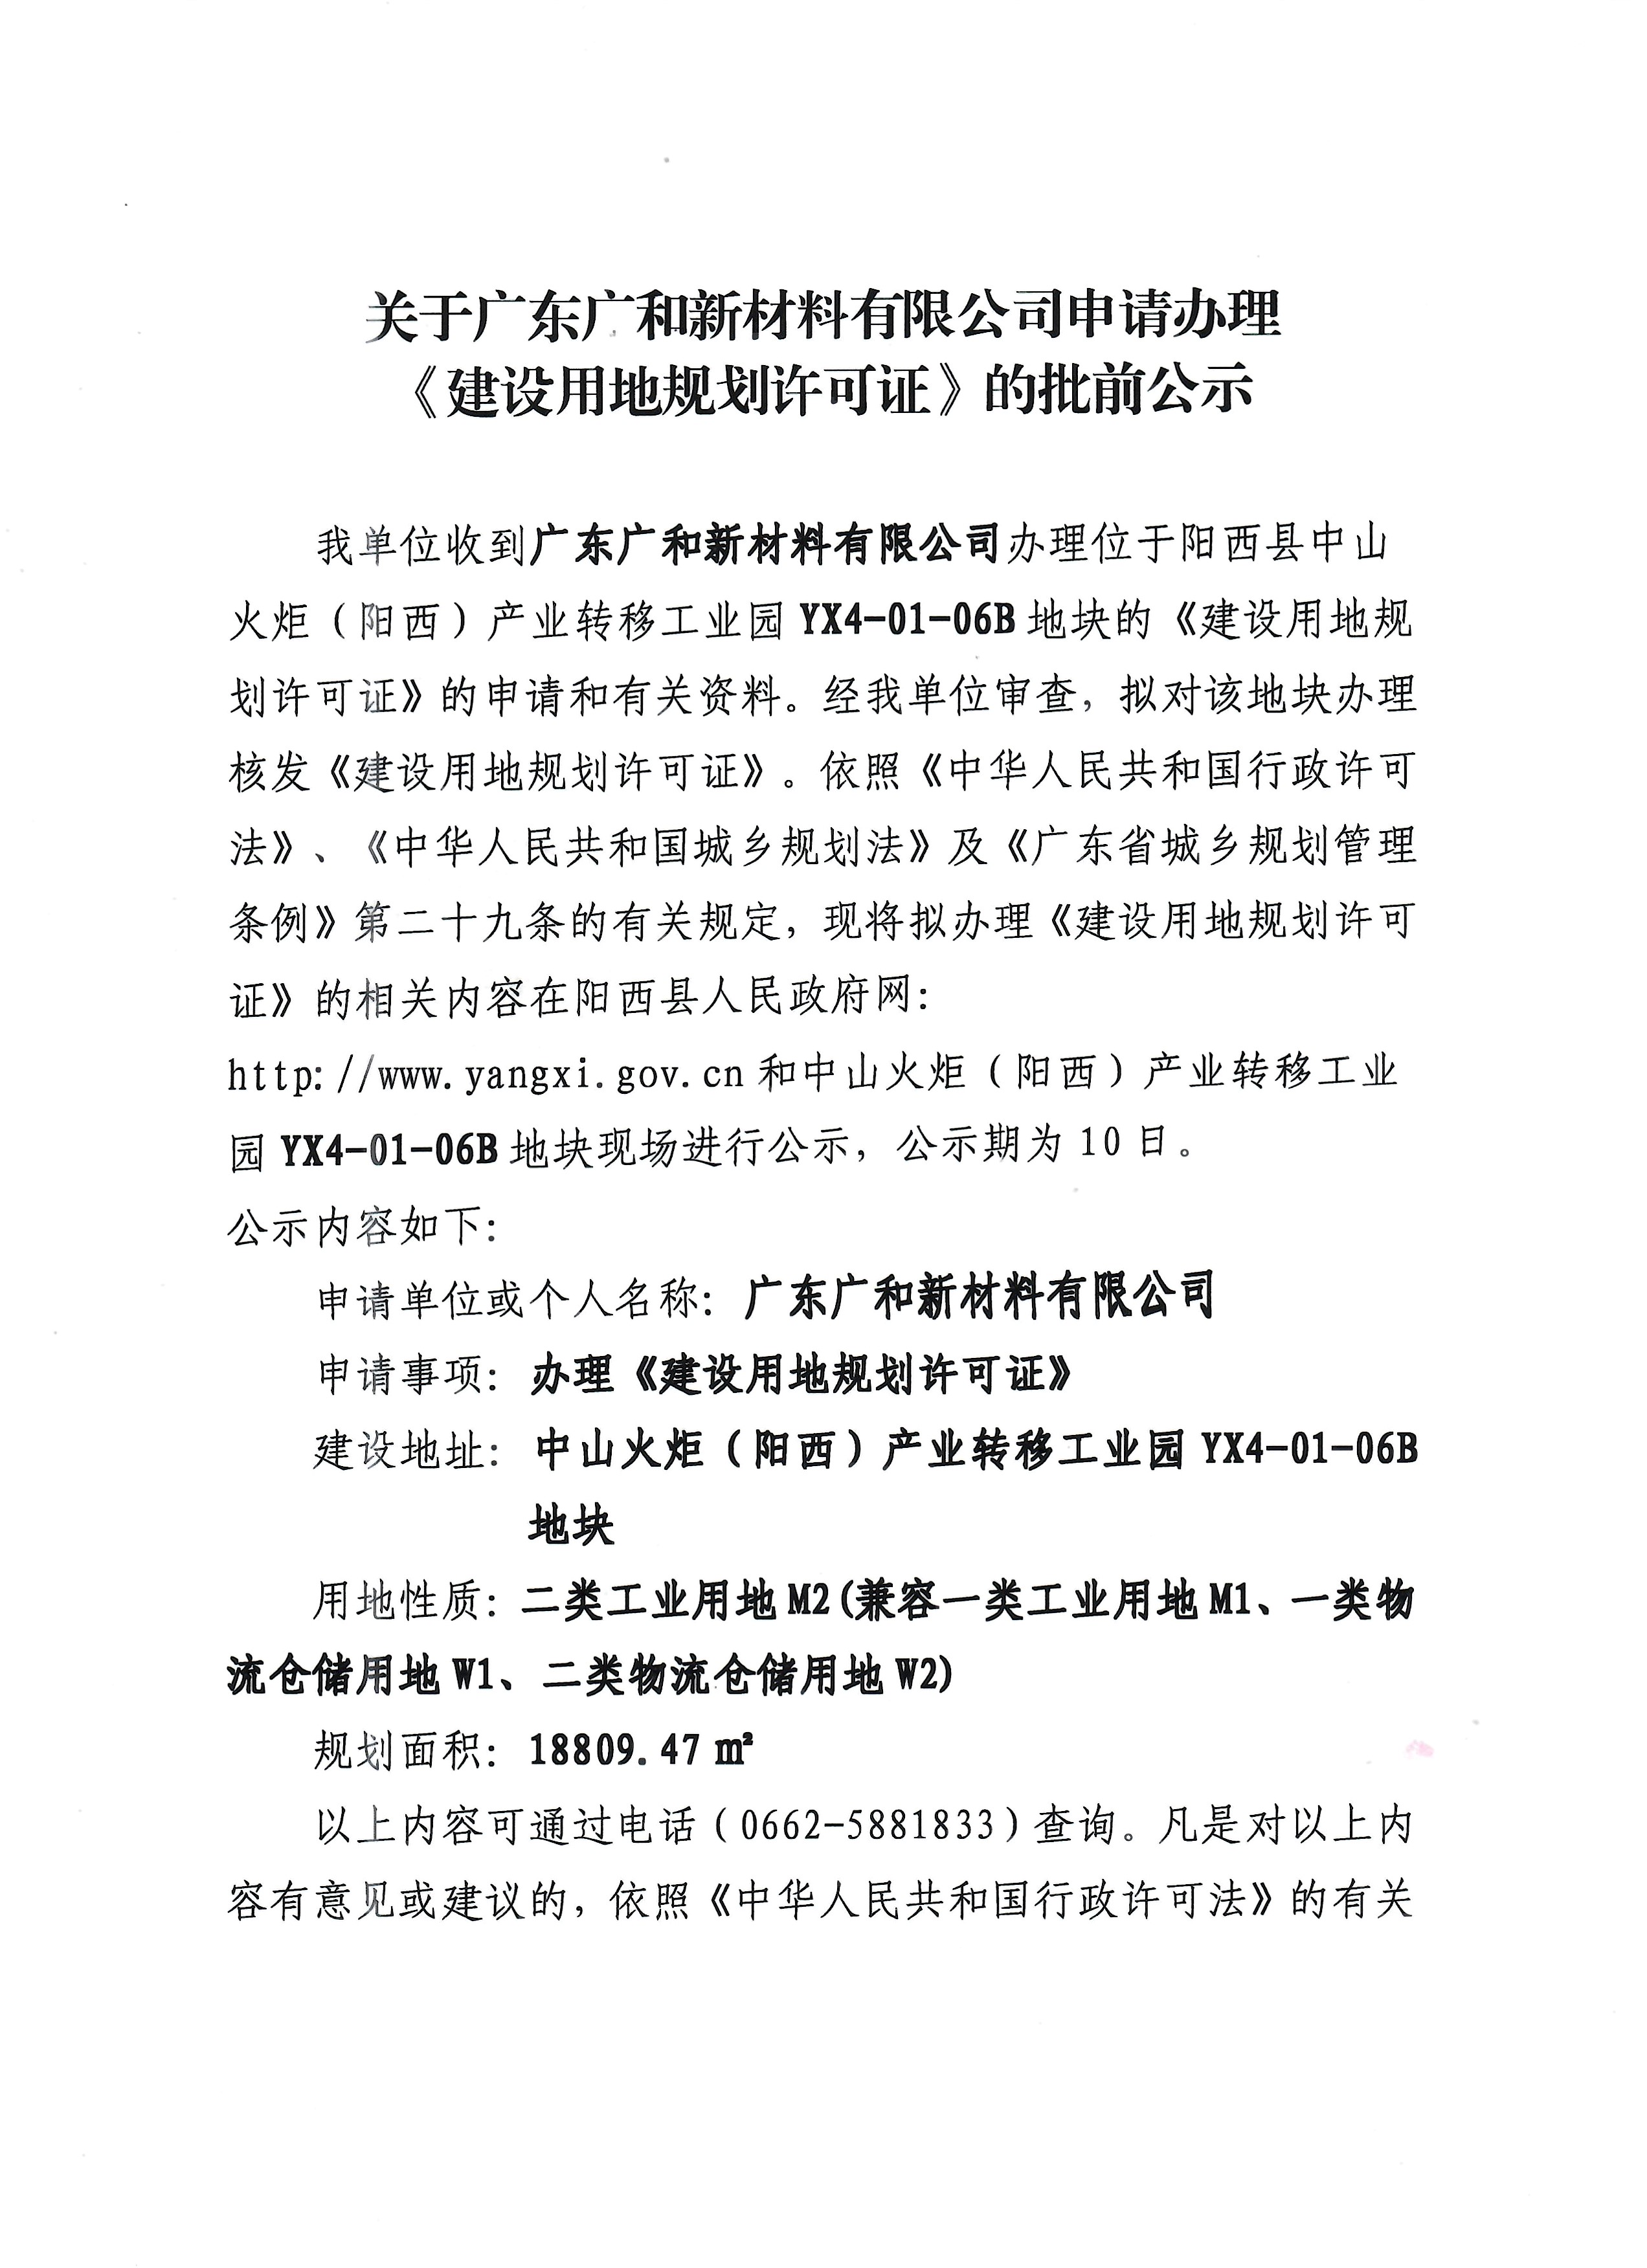 关于广东广和新材料有限公司申请办理《建设用地规划许可证》的批前公示1.jpg